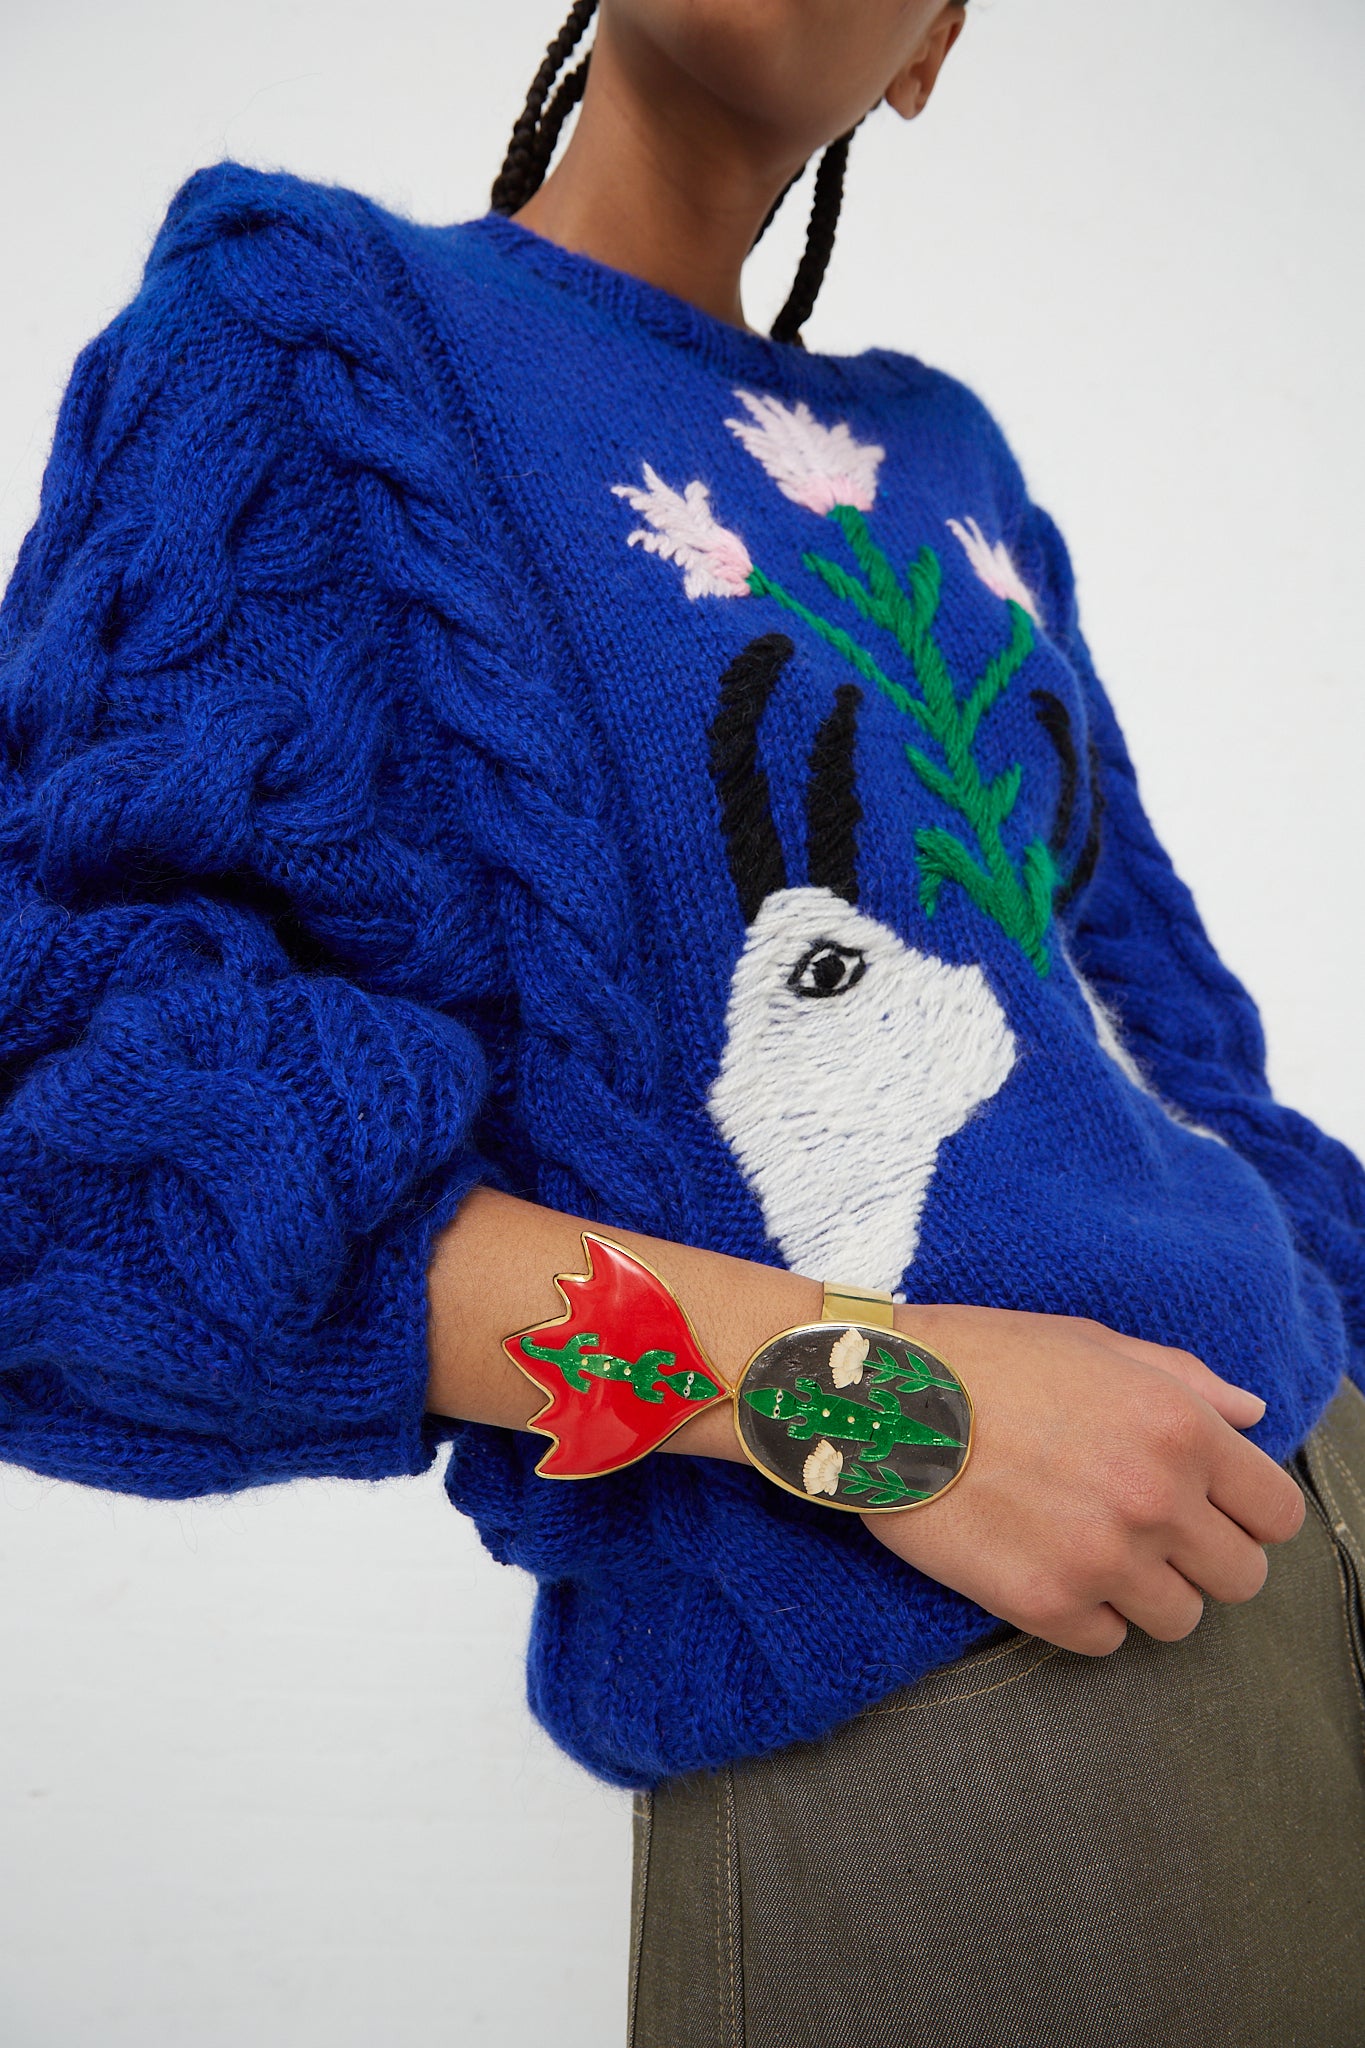 A woman wearing a blue sweater with an enamel Sofio Gongli cuff bracelet in Alligators.